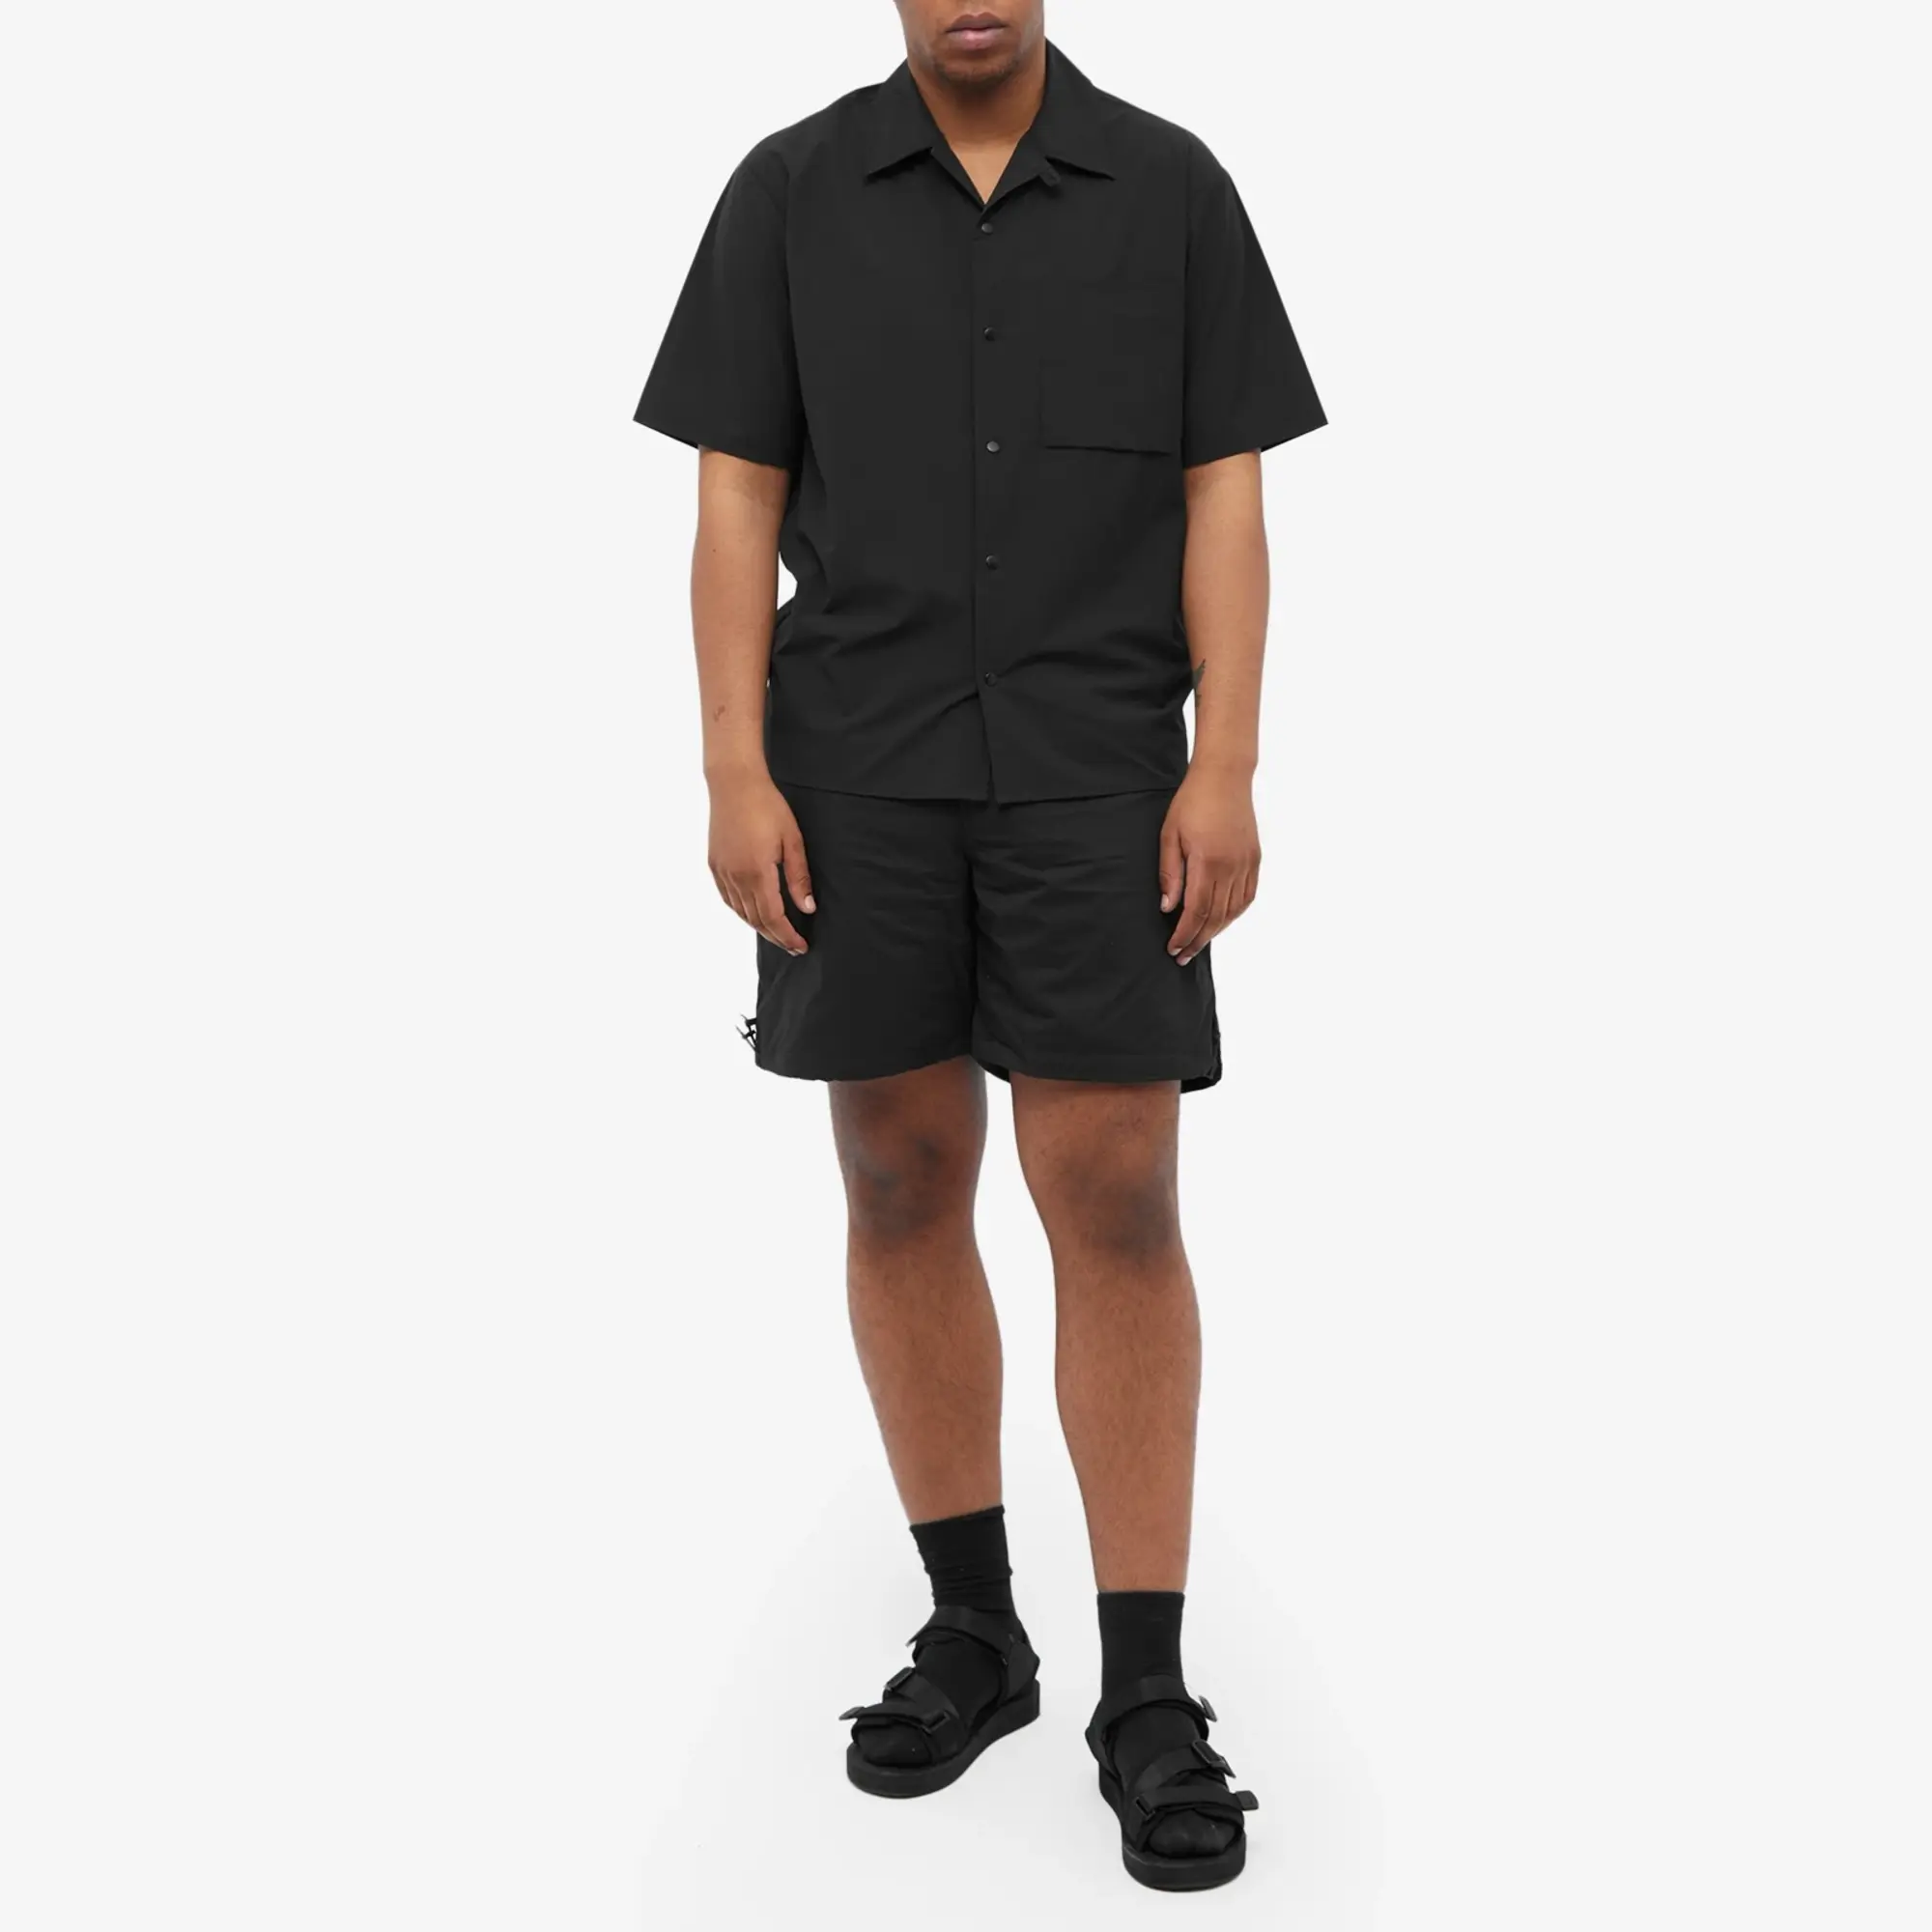 Quick F/CE. Men's Pertex Tech Shorts Black